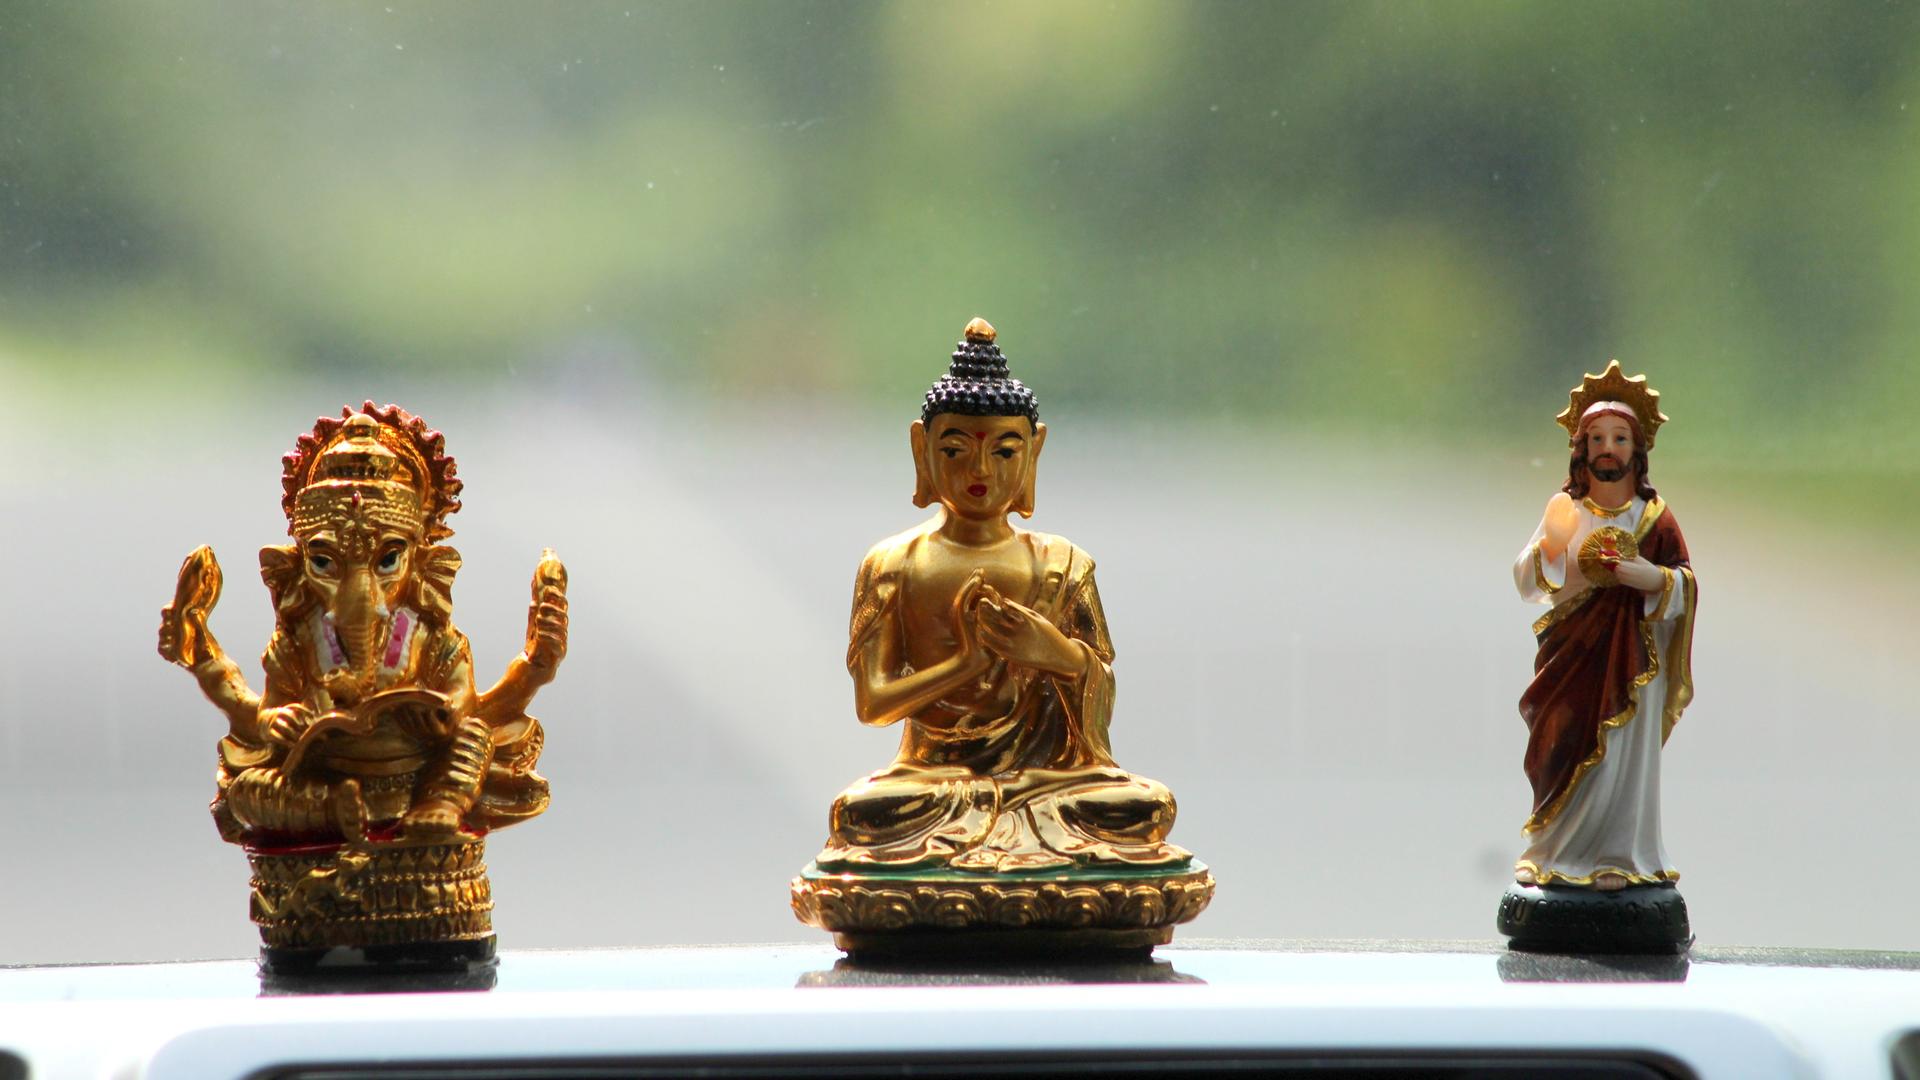 Drei Figuren unterschiedlicher Glaubensrichtungen, Hinduismus, Buddhismus und Christentum, stehen auf einem Autodach. Der Hintergrund ist verschwommen grün.